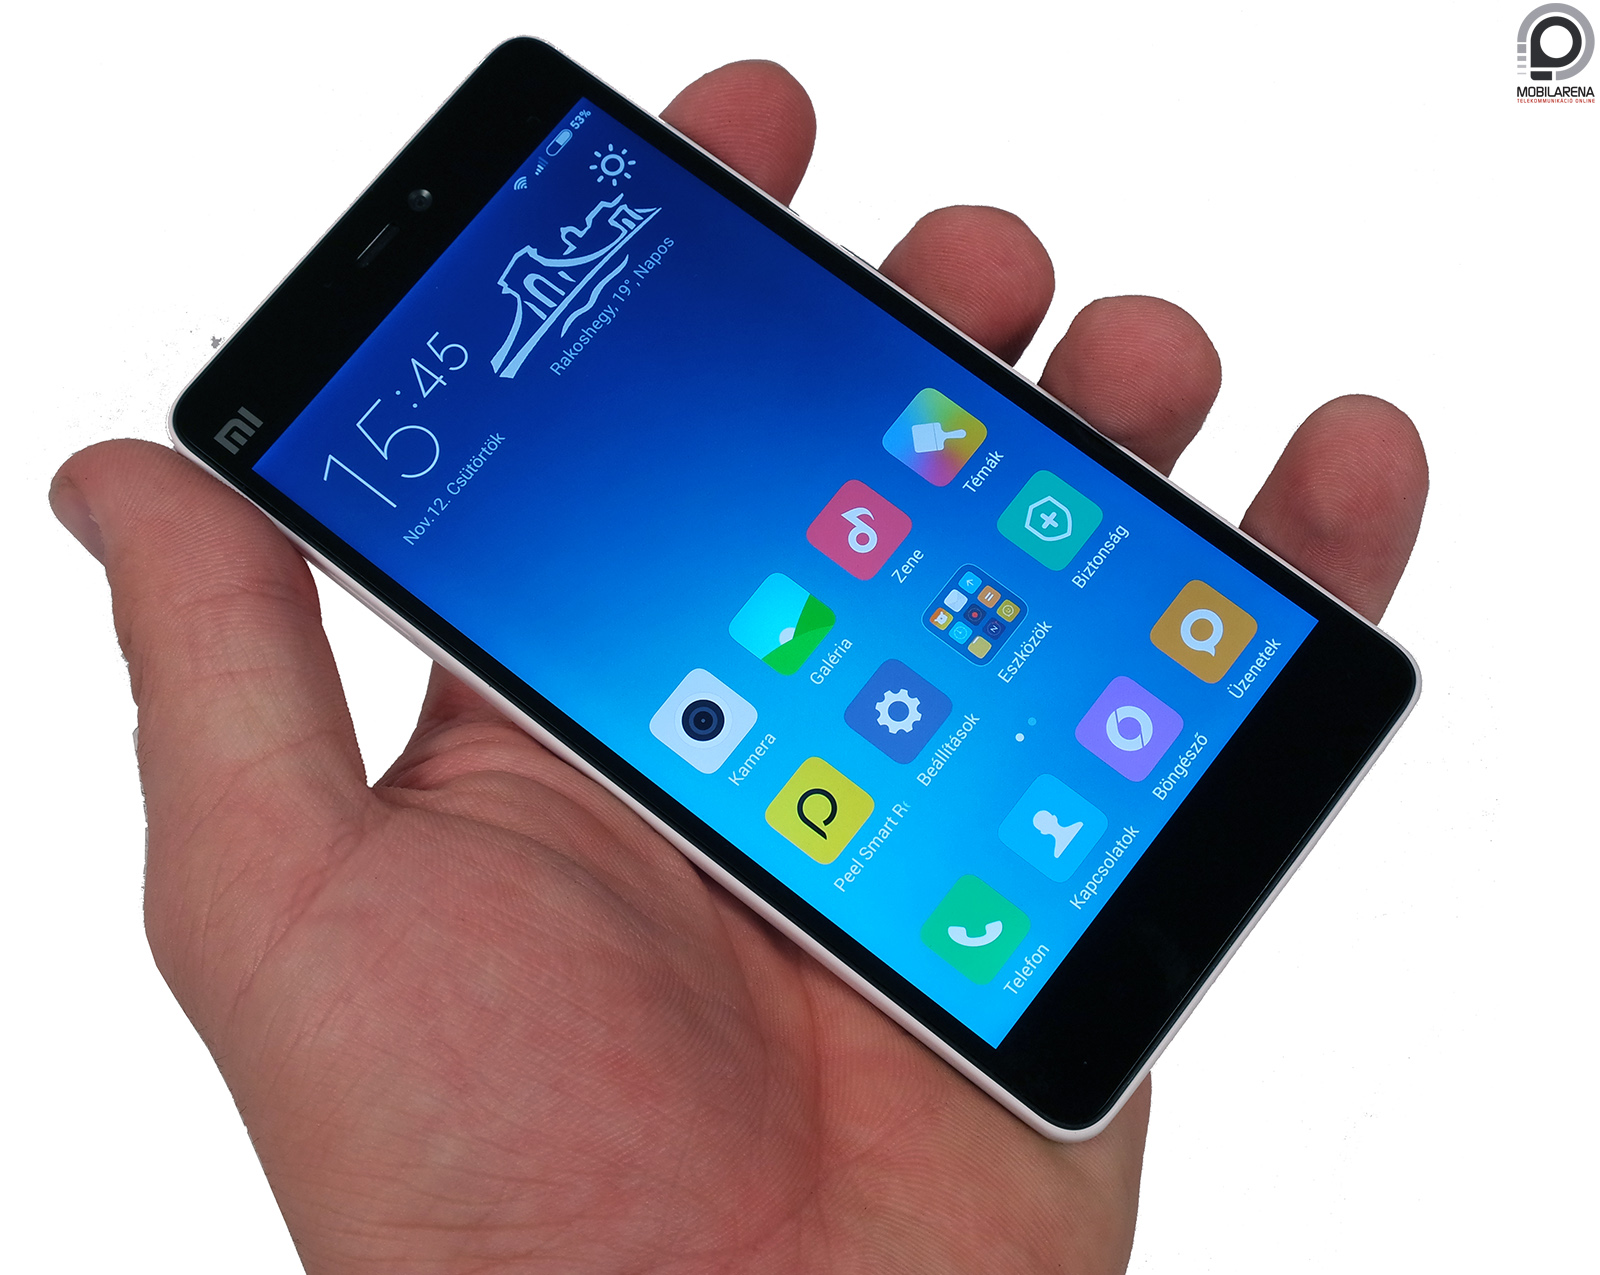 Xiaomi Mi 4c - színes regényhős - Mobilarena Okostelefon teszt